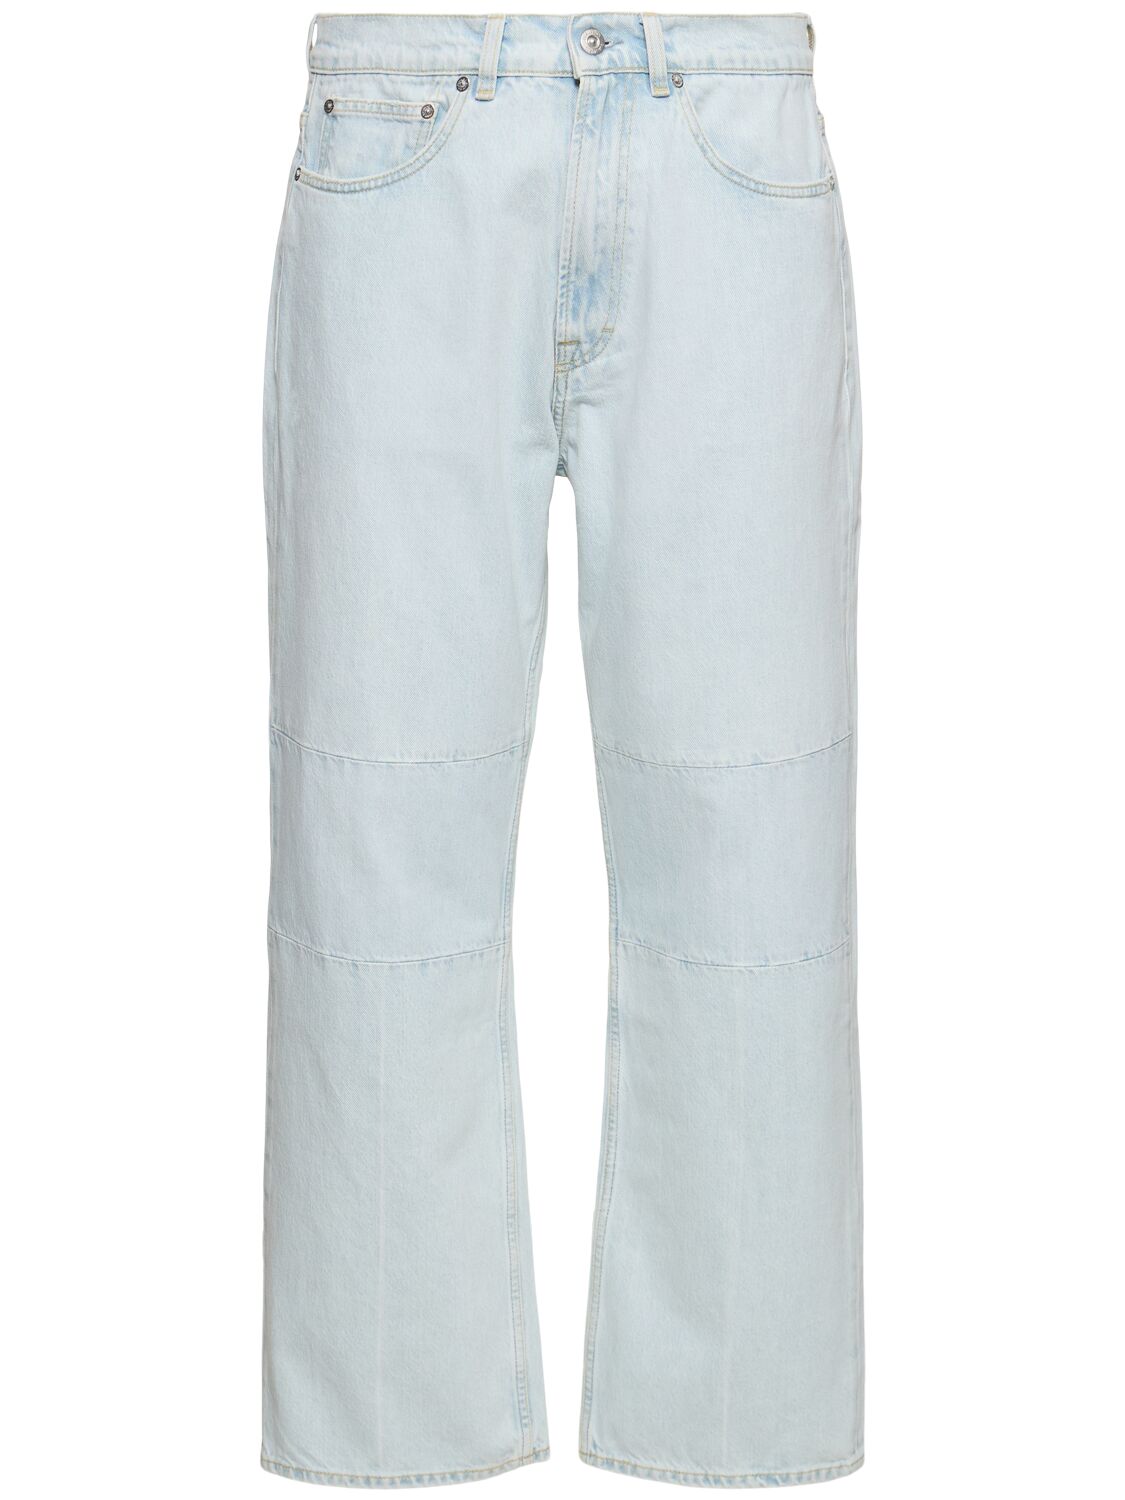 25.5cm Extended Third Cut Cotton Jeans